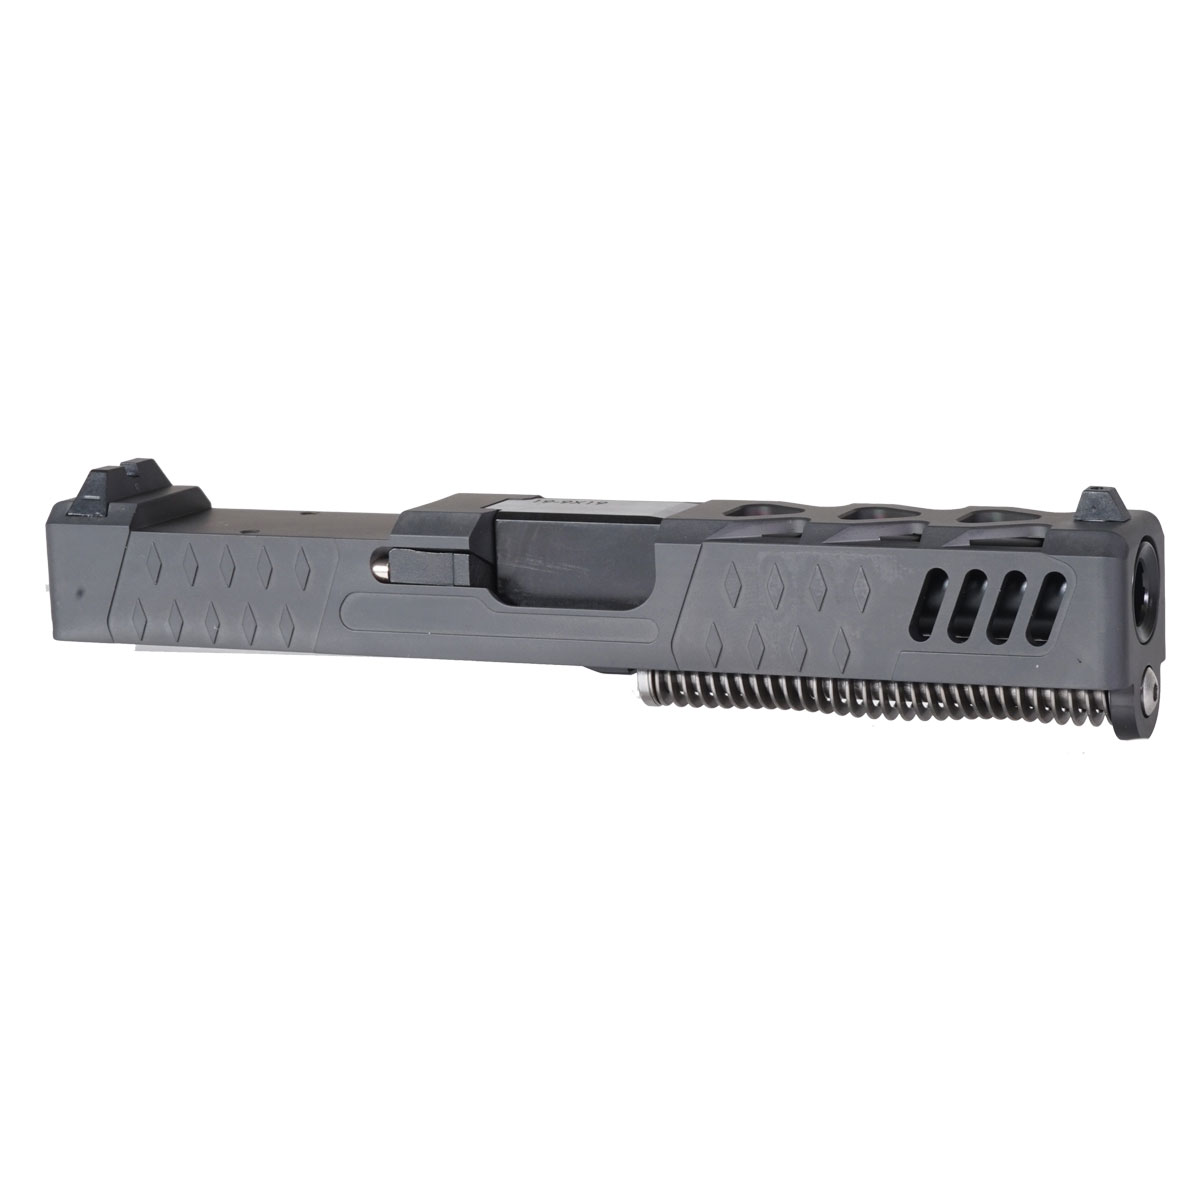 OTD 'The Sarah' 9mm Complete Slide Kit - Glock 19 Gen 1-3 Compatible